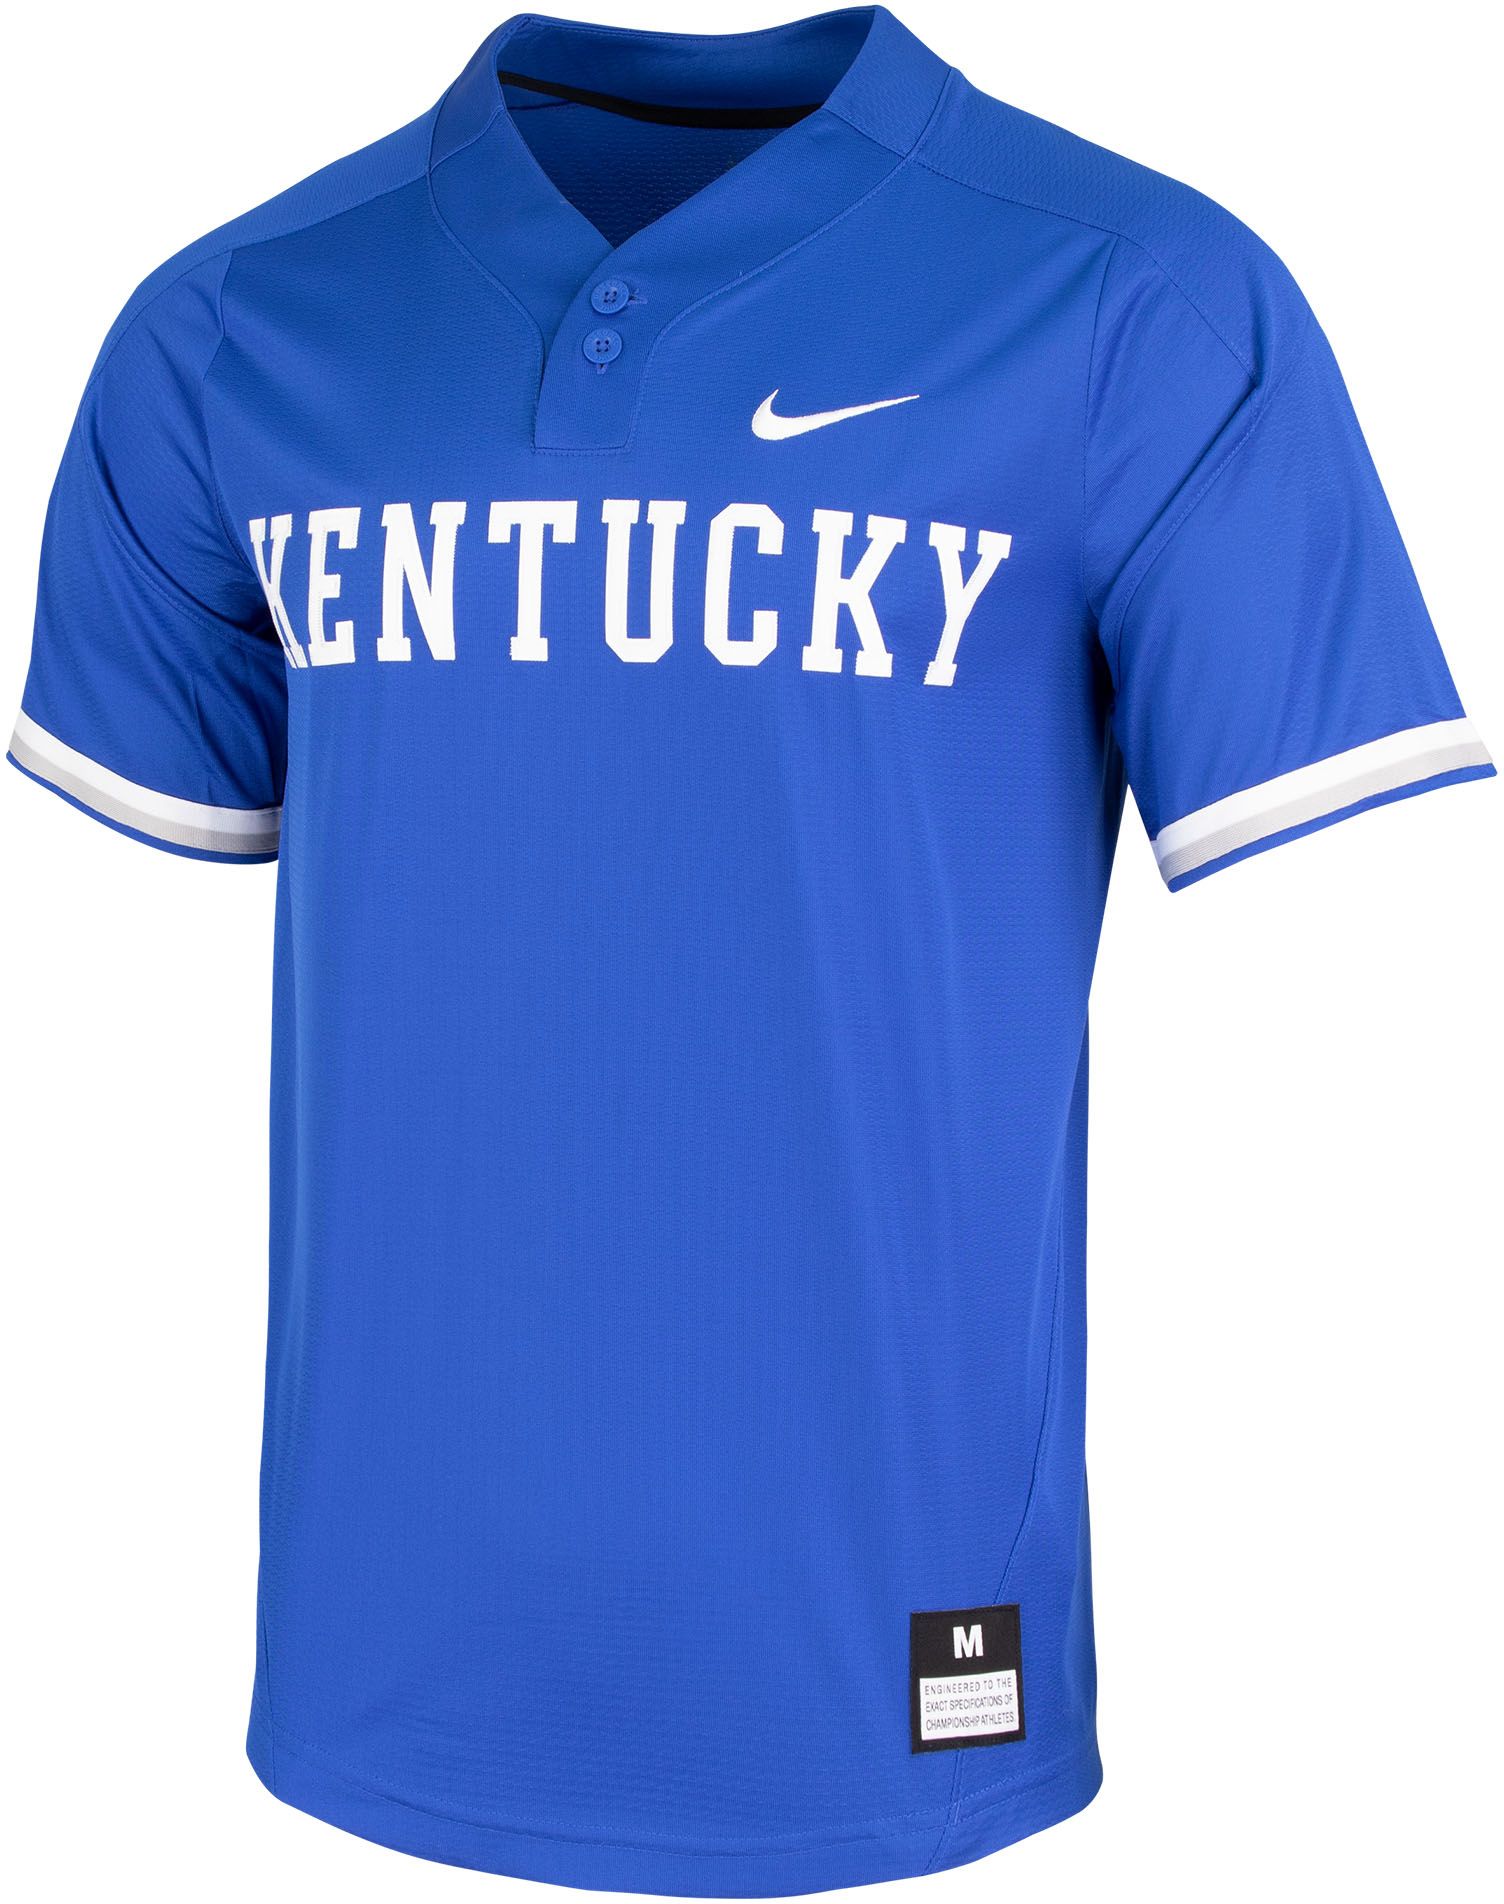 kentucky wildcats baseball jersey